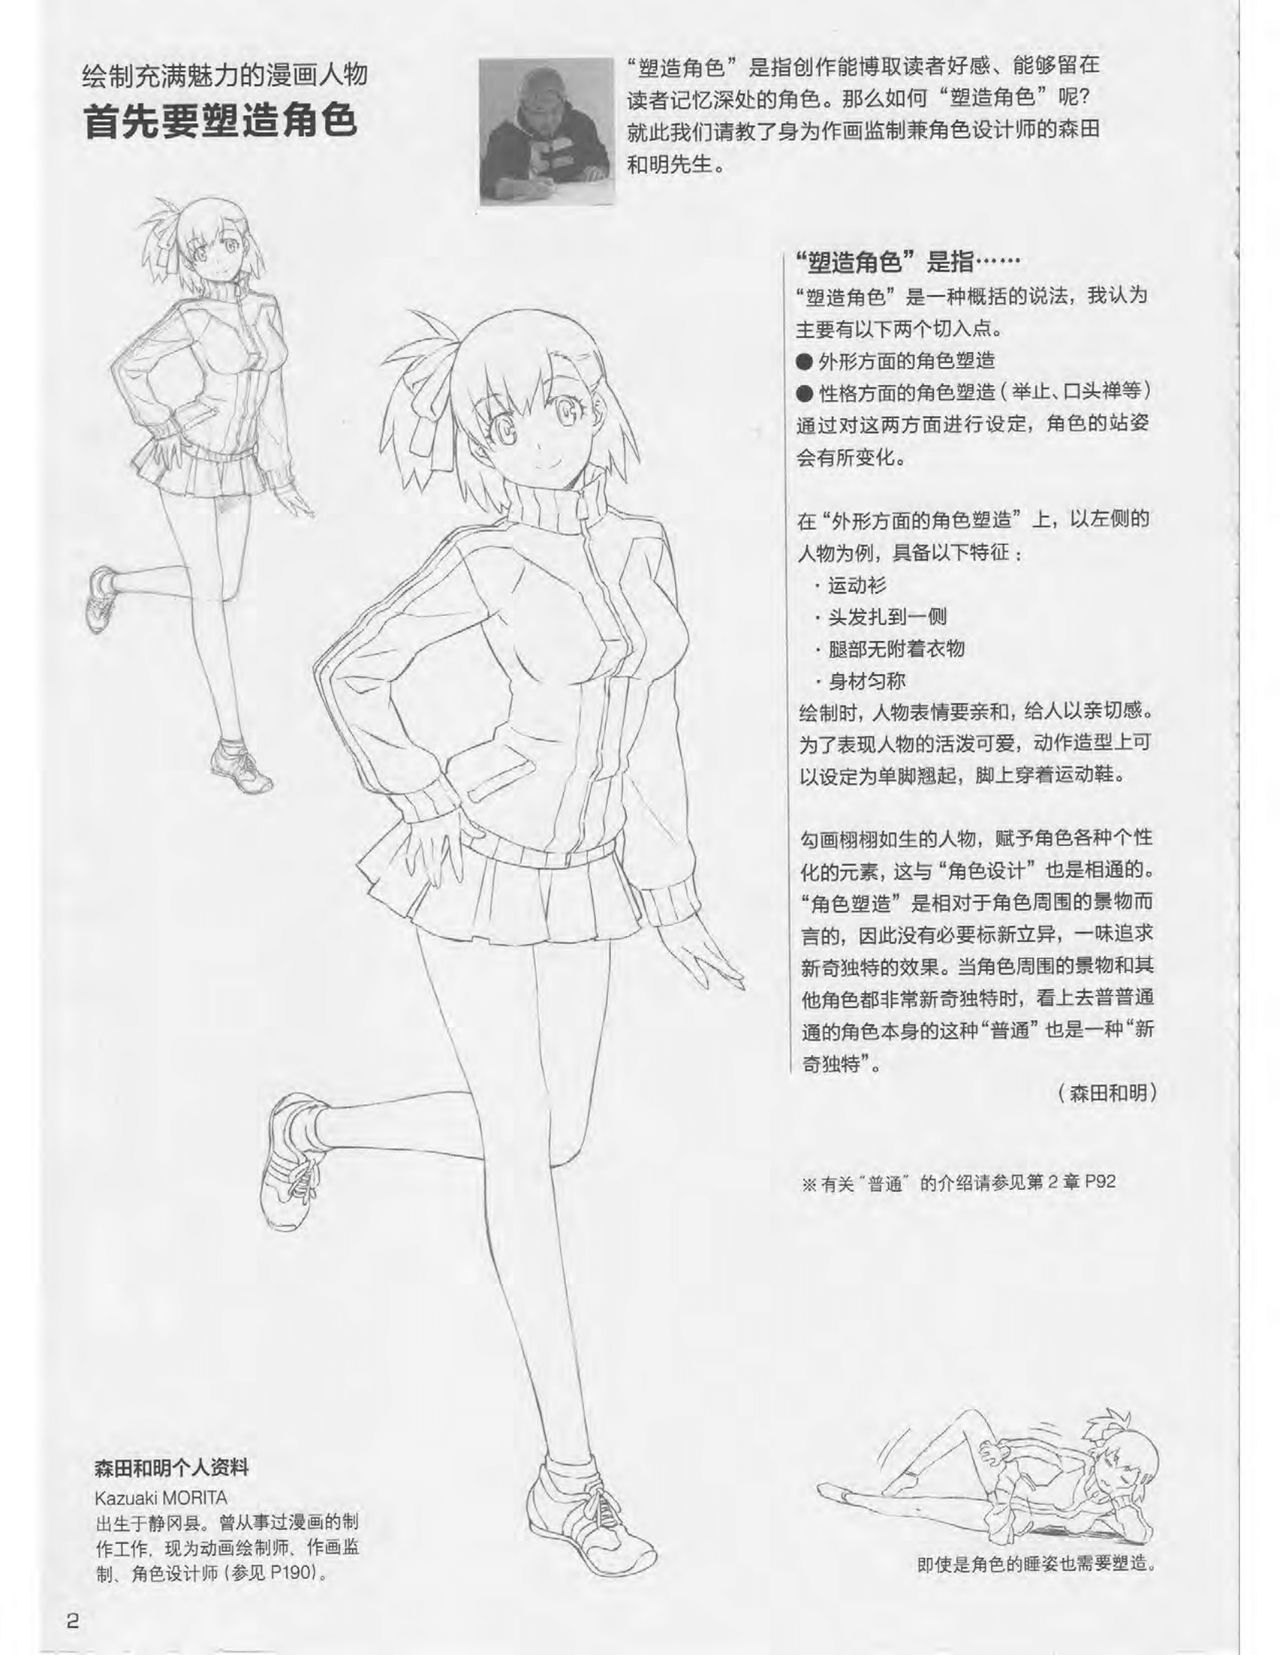 Japanese Manga Master Lecture 3: Lin Akira and Kakumaru Maru Talk About Glamorous Character Modeling 2